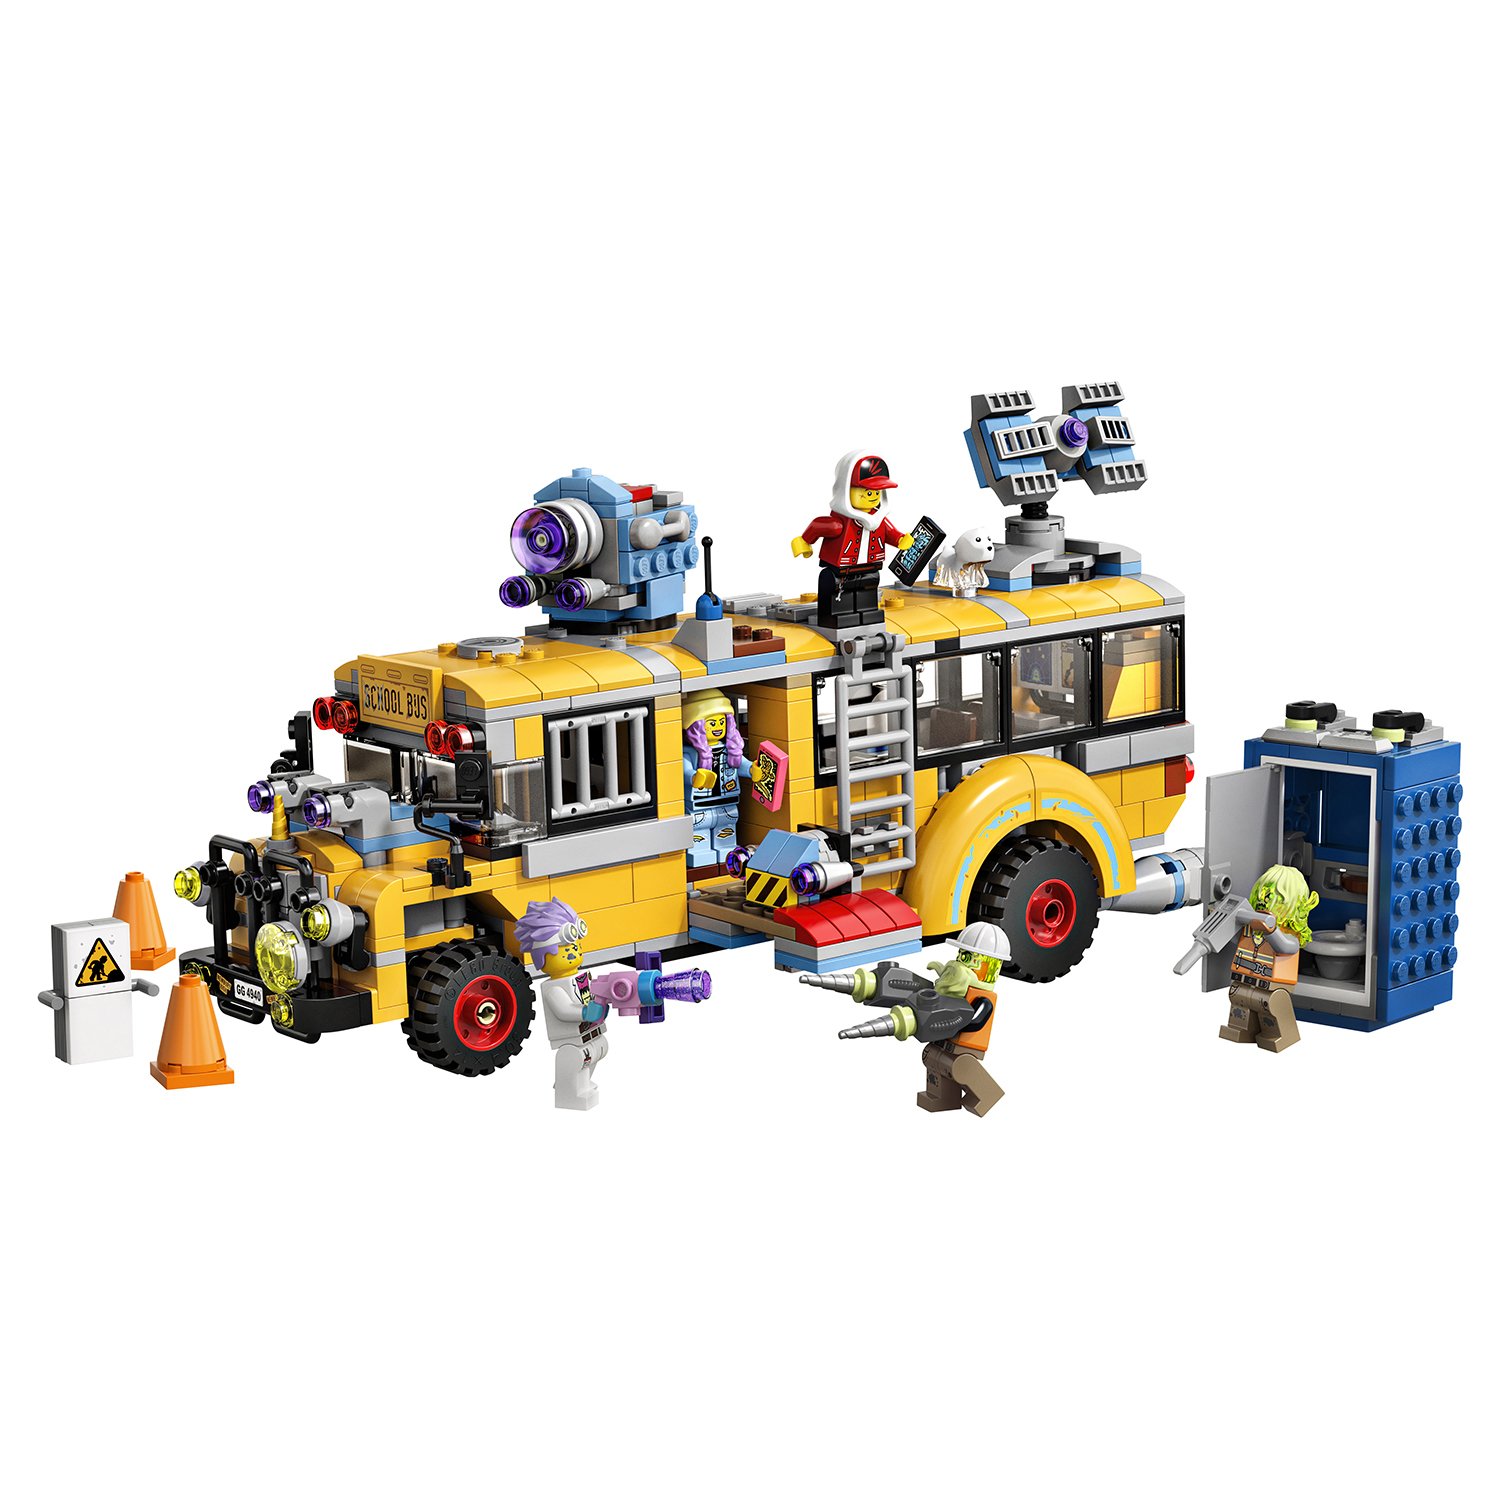 Lego Hidden Side 70423 Автобус охотников за паранормальными явлениям